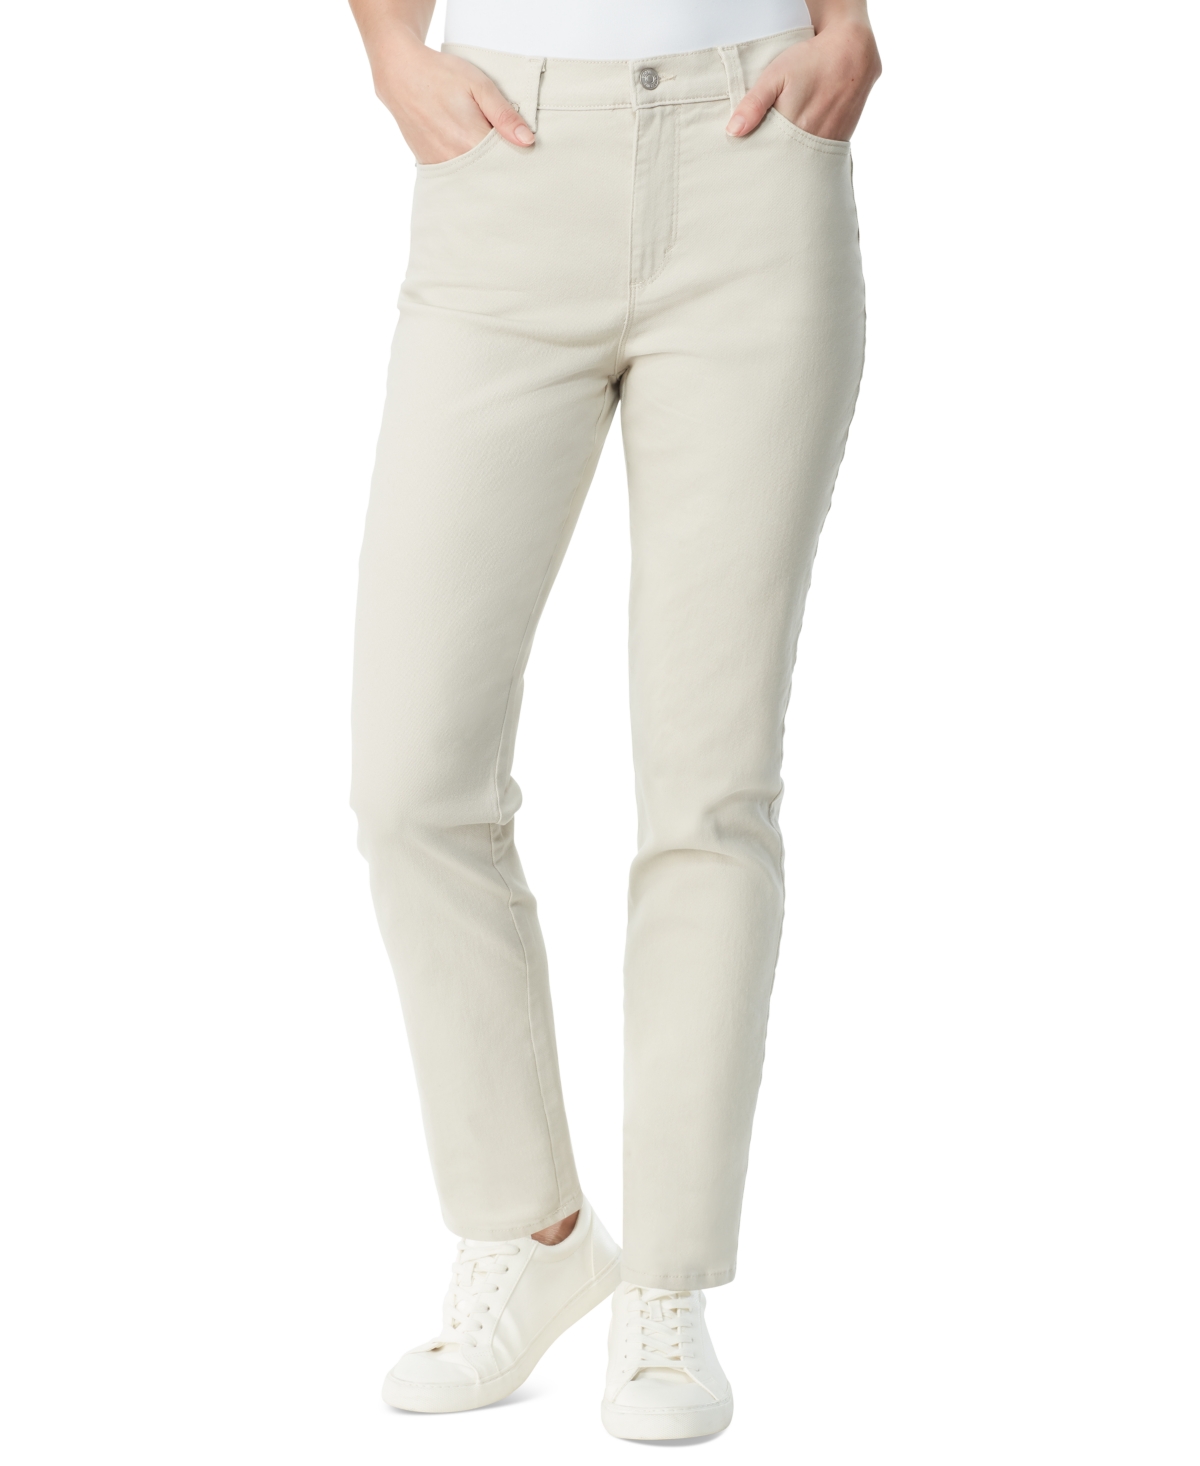 Petite Amanda High Rise Straight-Leg Jeans, Petite & Petite Short - Vintage White